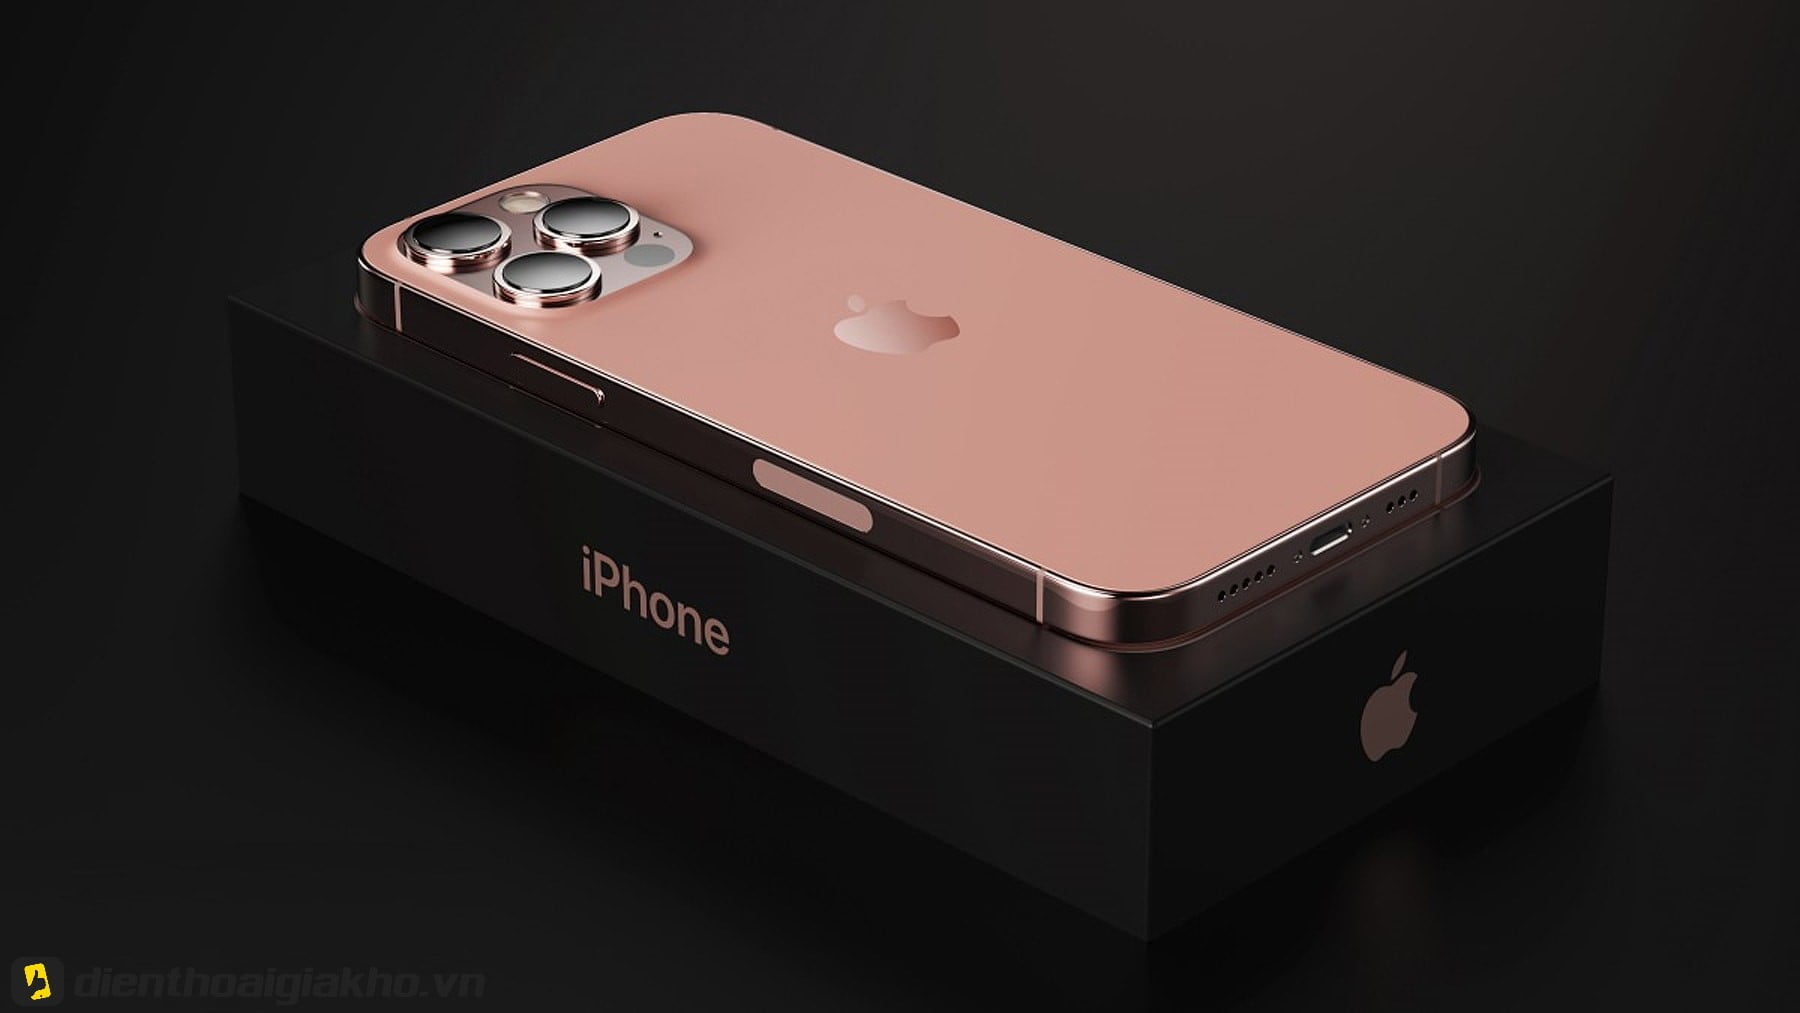 Hình ảnh chiếc iPhone 13 Pro màu hồng phấn đầy nữ tính